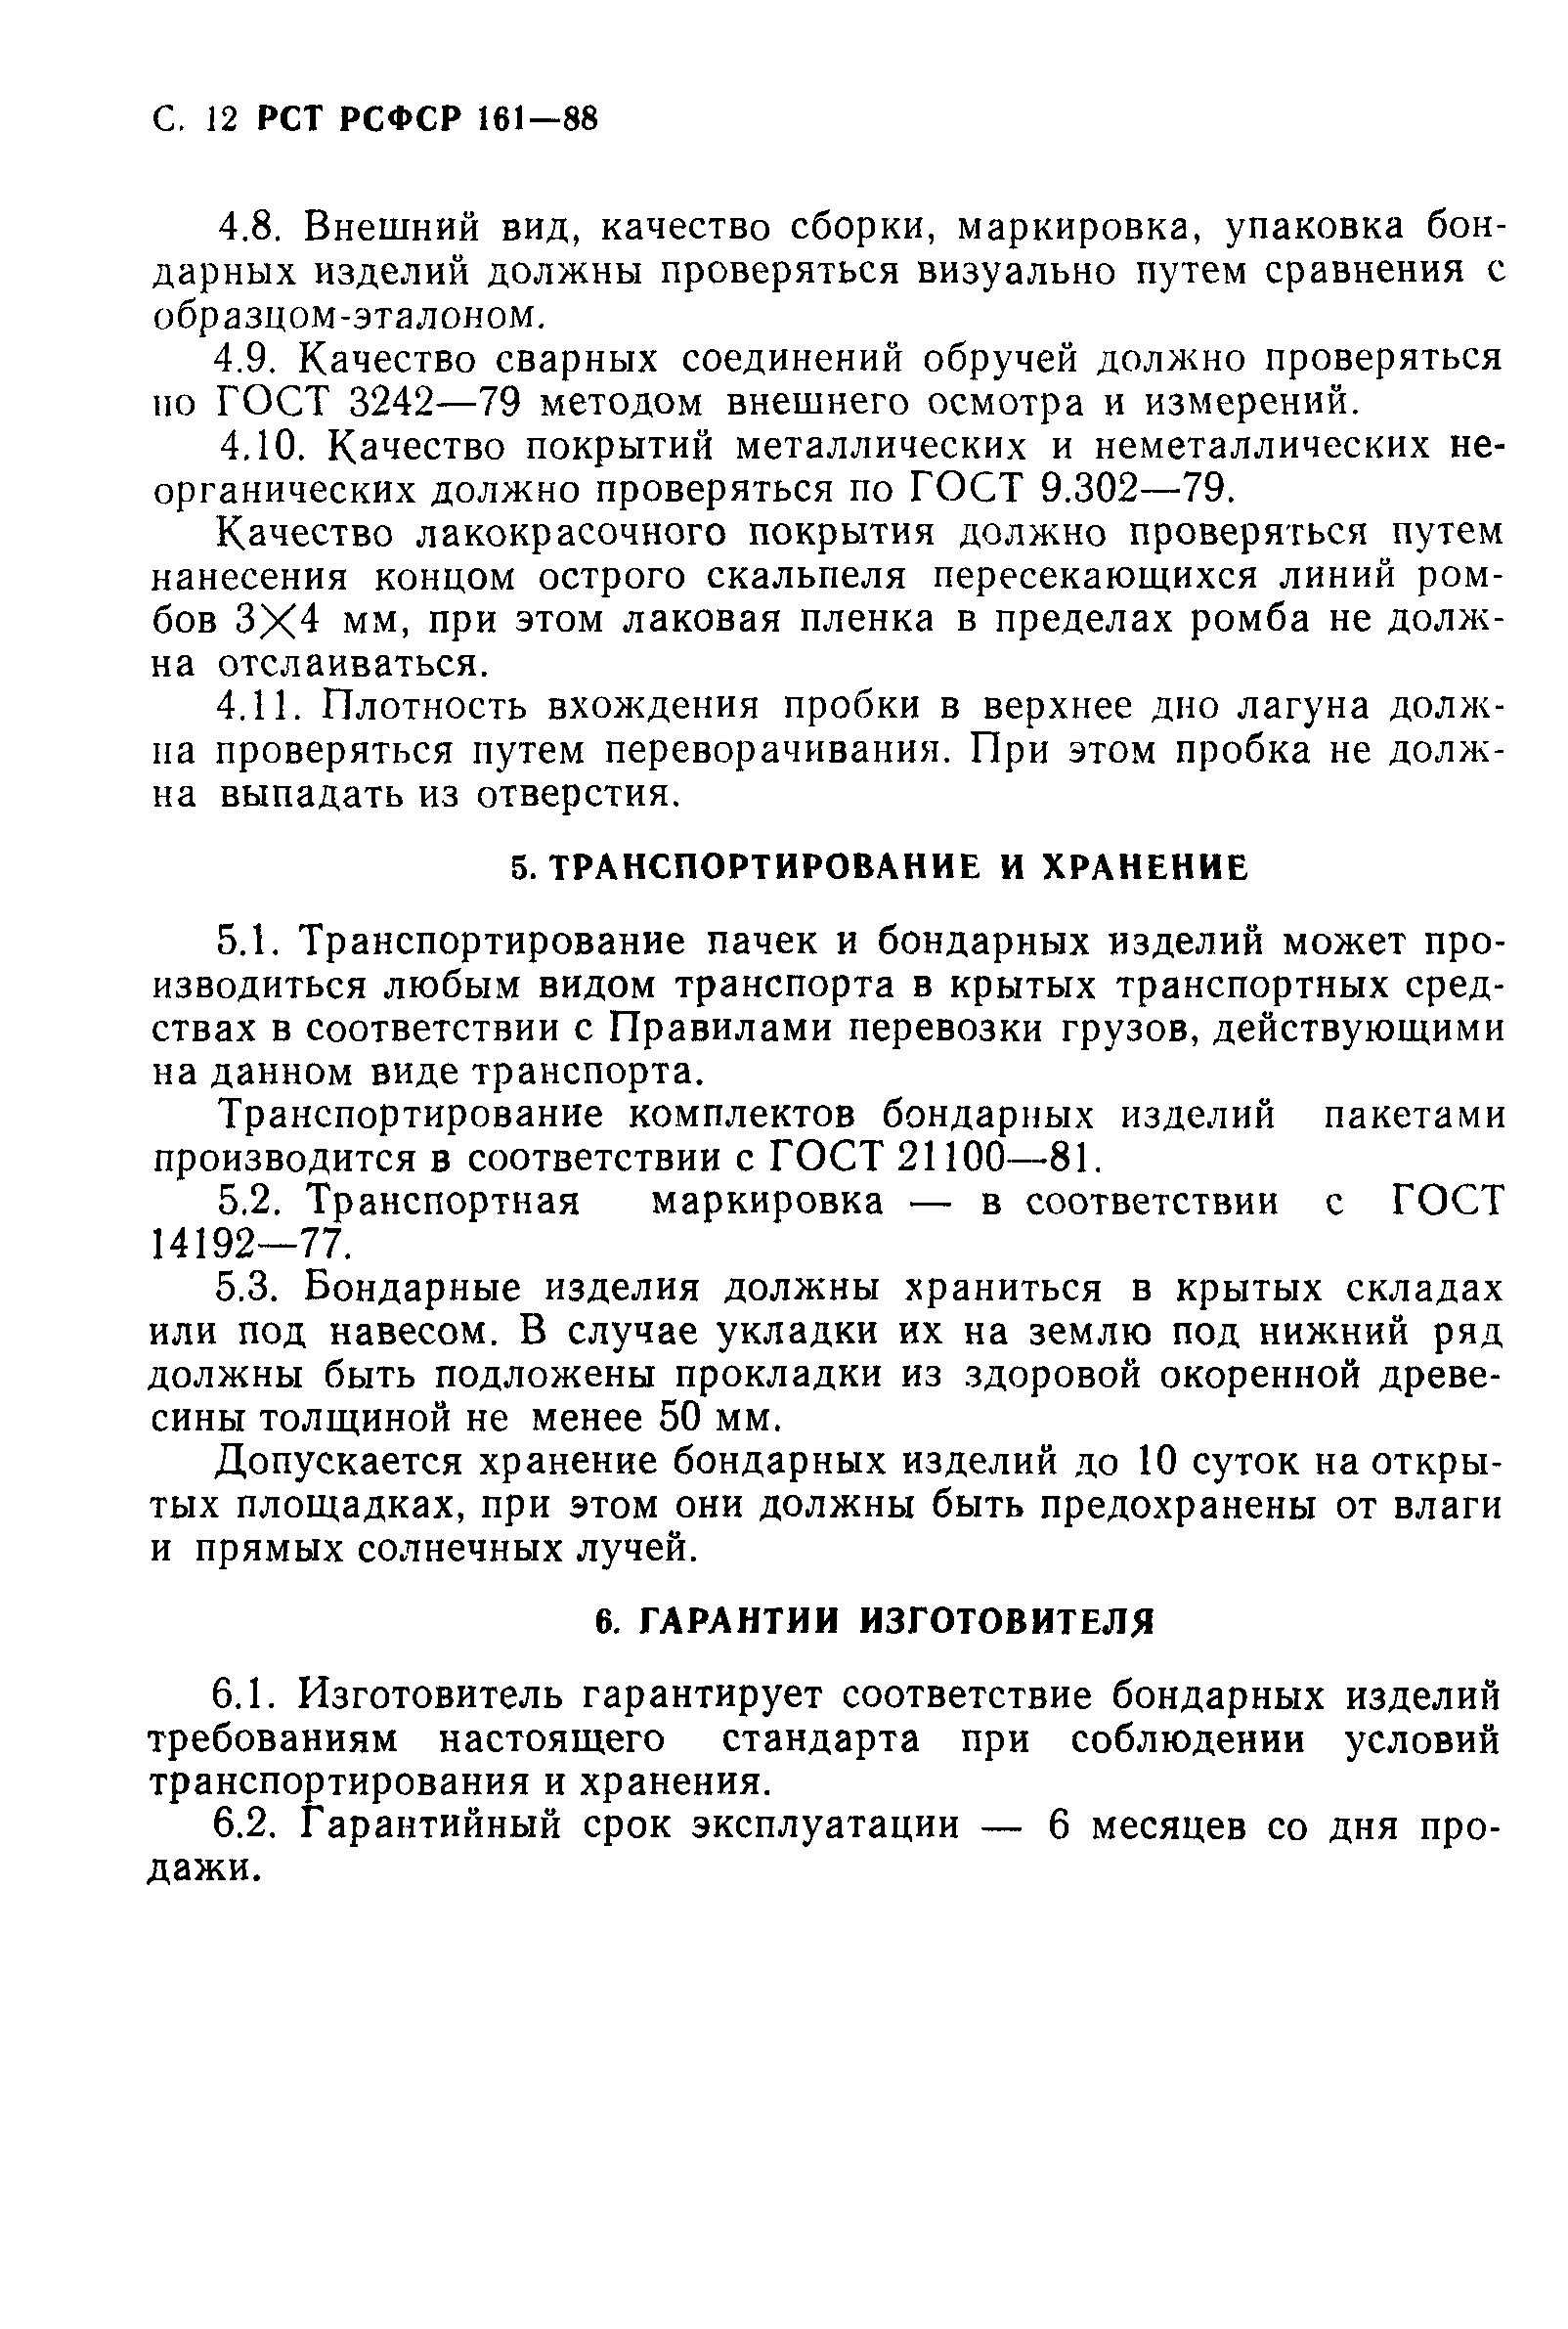 РСТ РСФСР 161-88